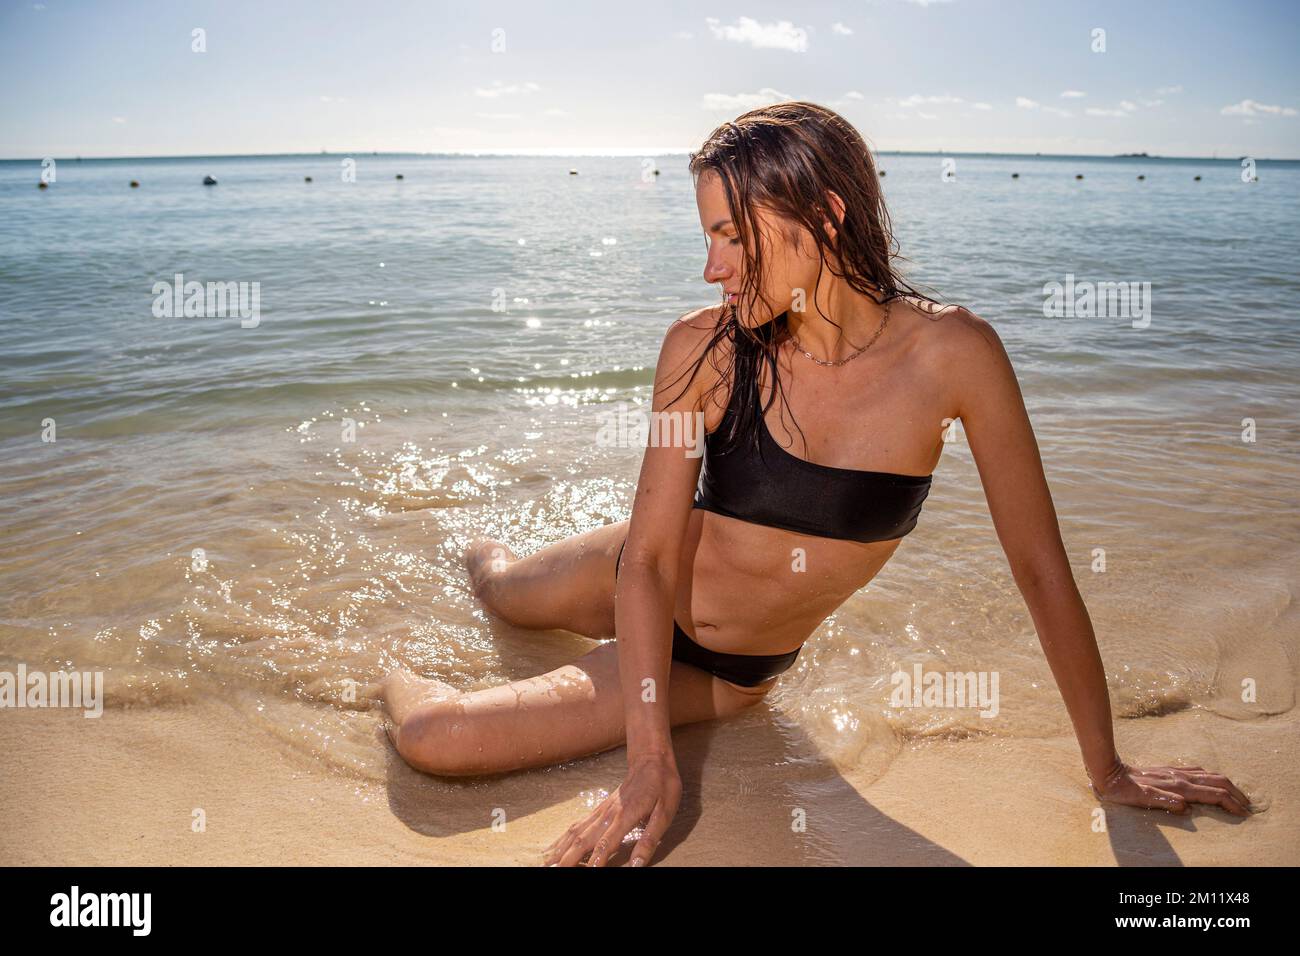 Jeune femme modèle en maillot de bain sexy posant sur l'une des plages de l'île Maurice à la lumière du coucher du soleil. Poils ondulés Pertfect, corps SKIM bronzé. Ambiance tropicale d'été. Banque D'Images